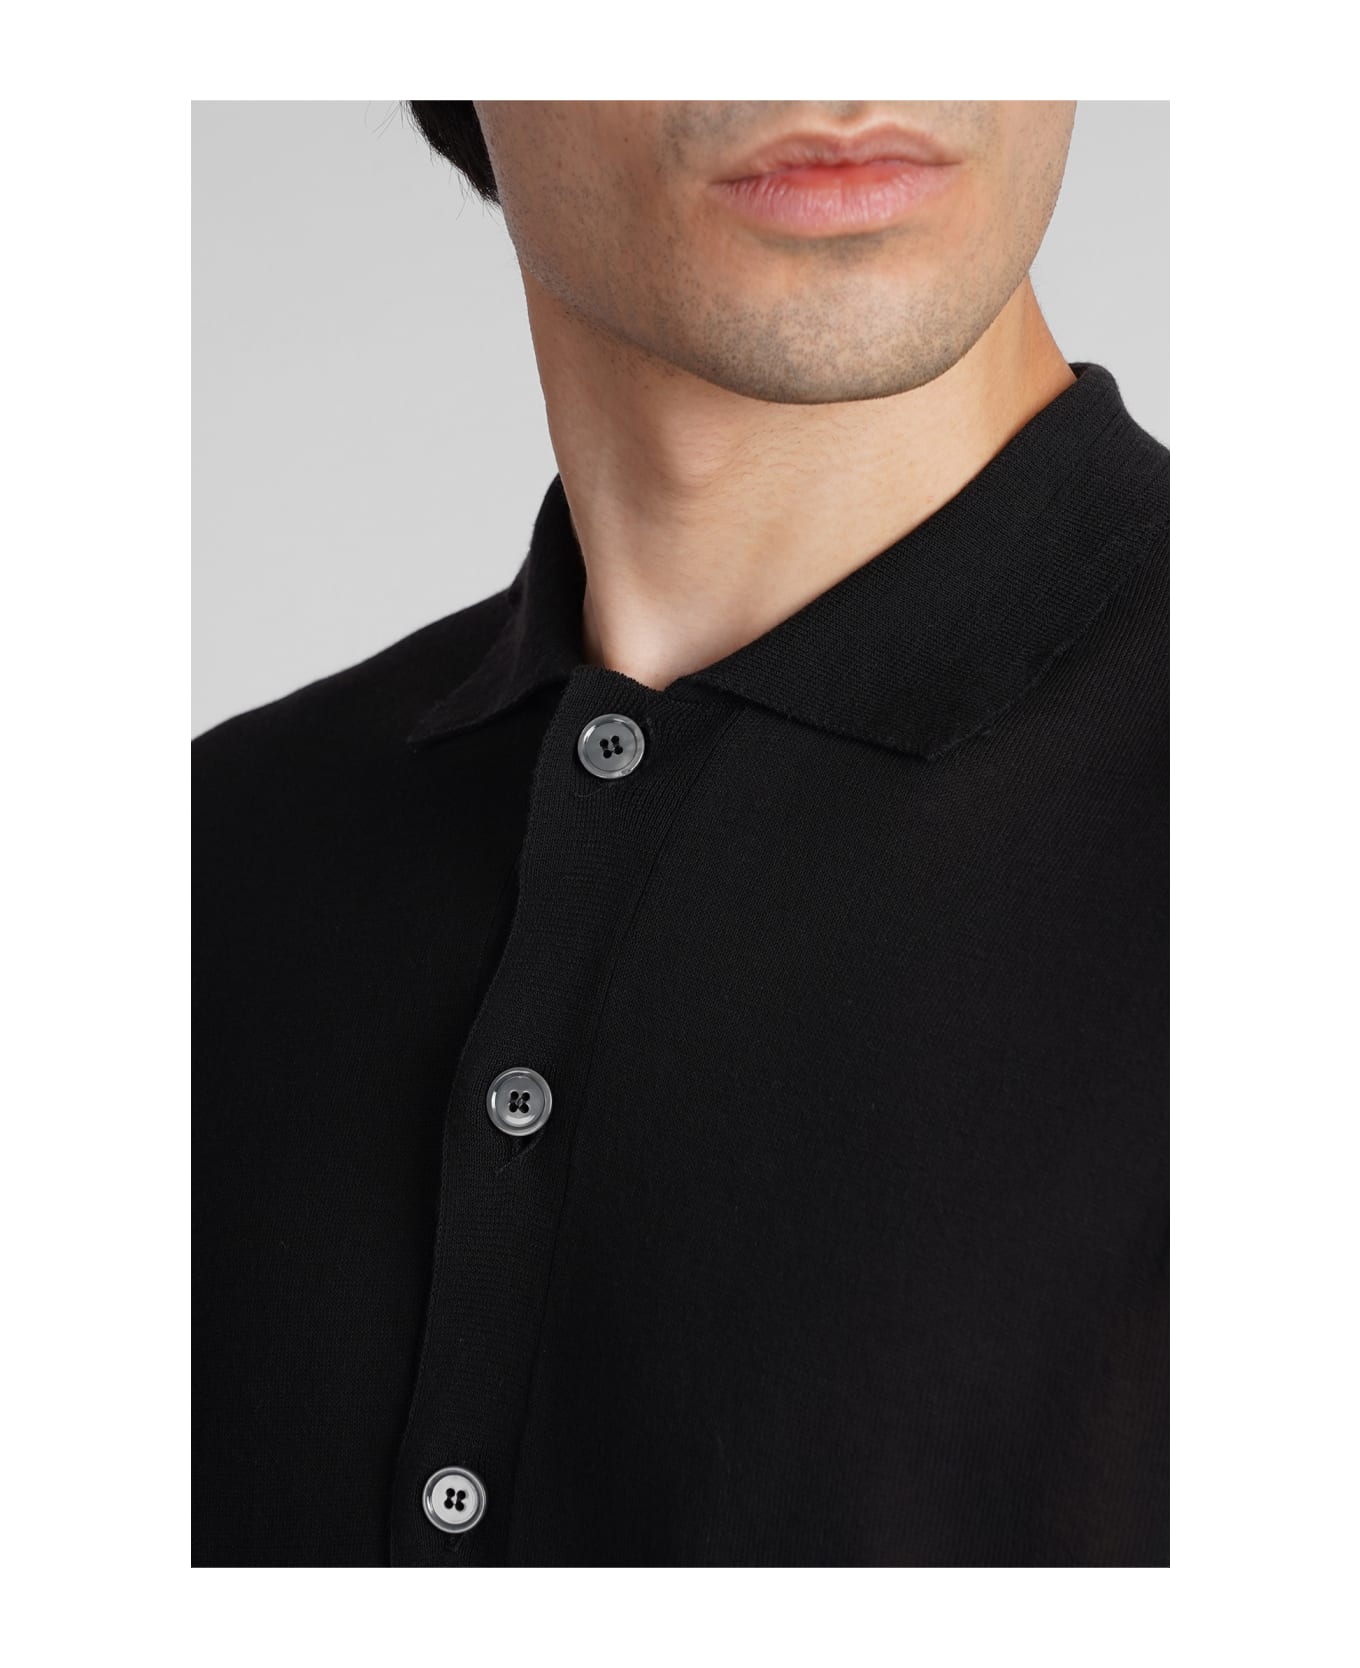 Mauro Grifoni Polo In Black Cotton - black ポロシャツ